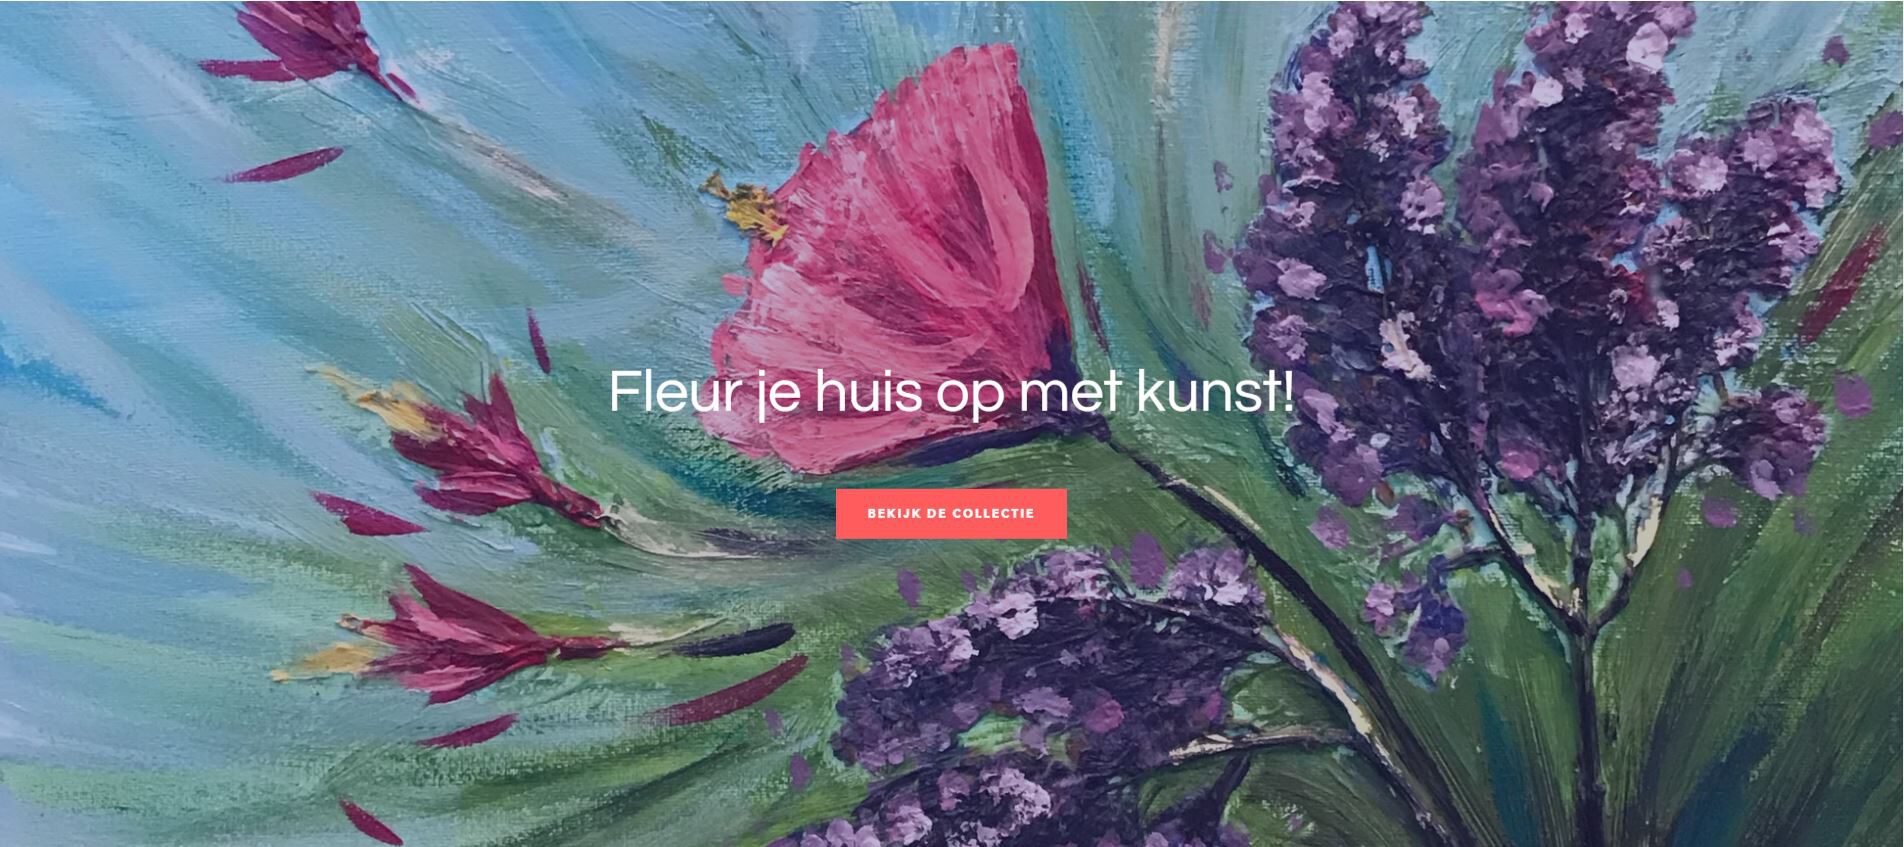 ShopJeKunst.nl Live met de nieuwe webshop!